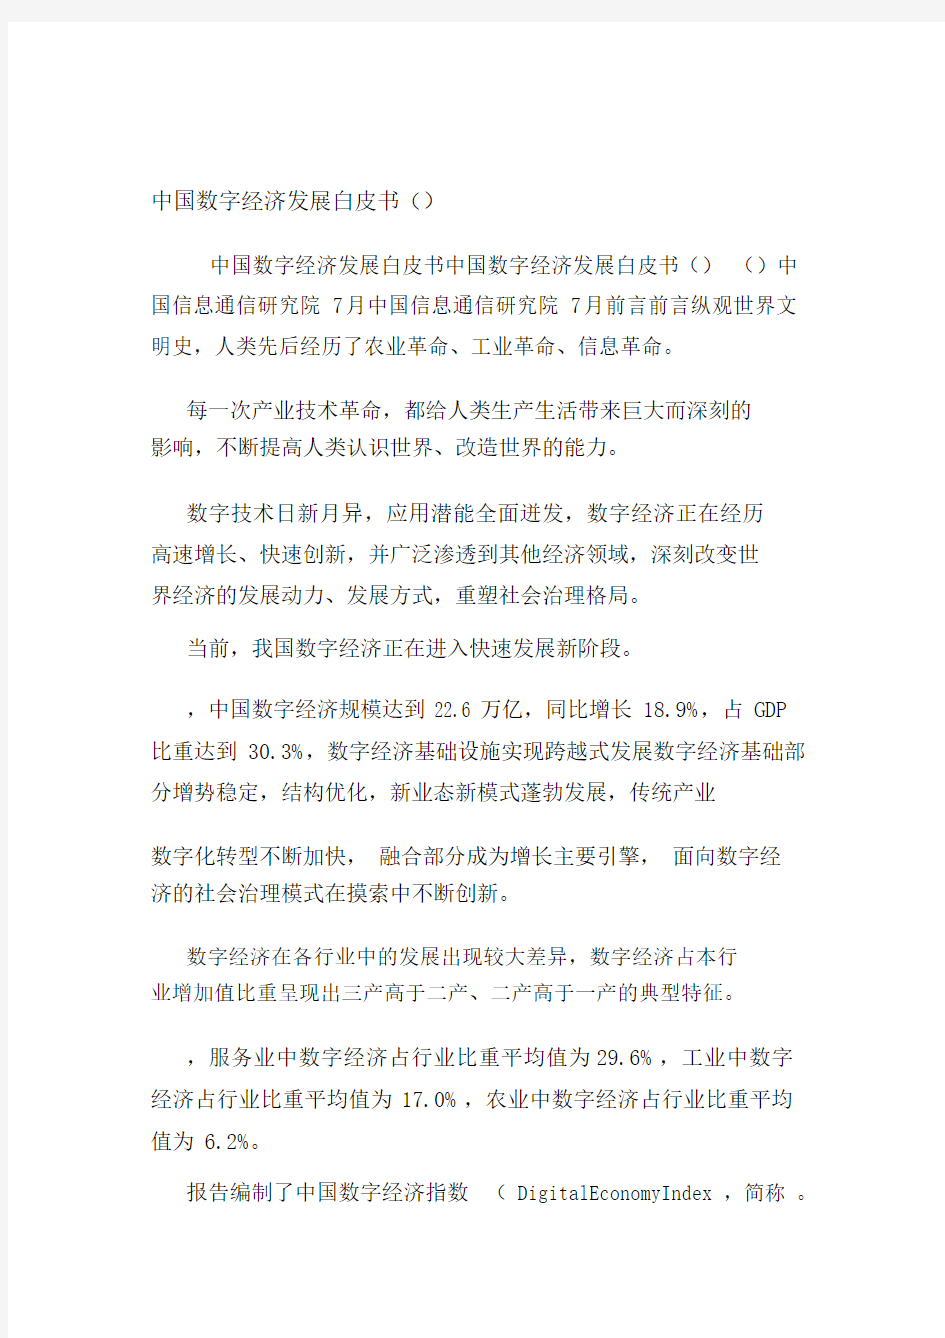 中国数字数经济发展白皮书.docx